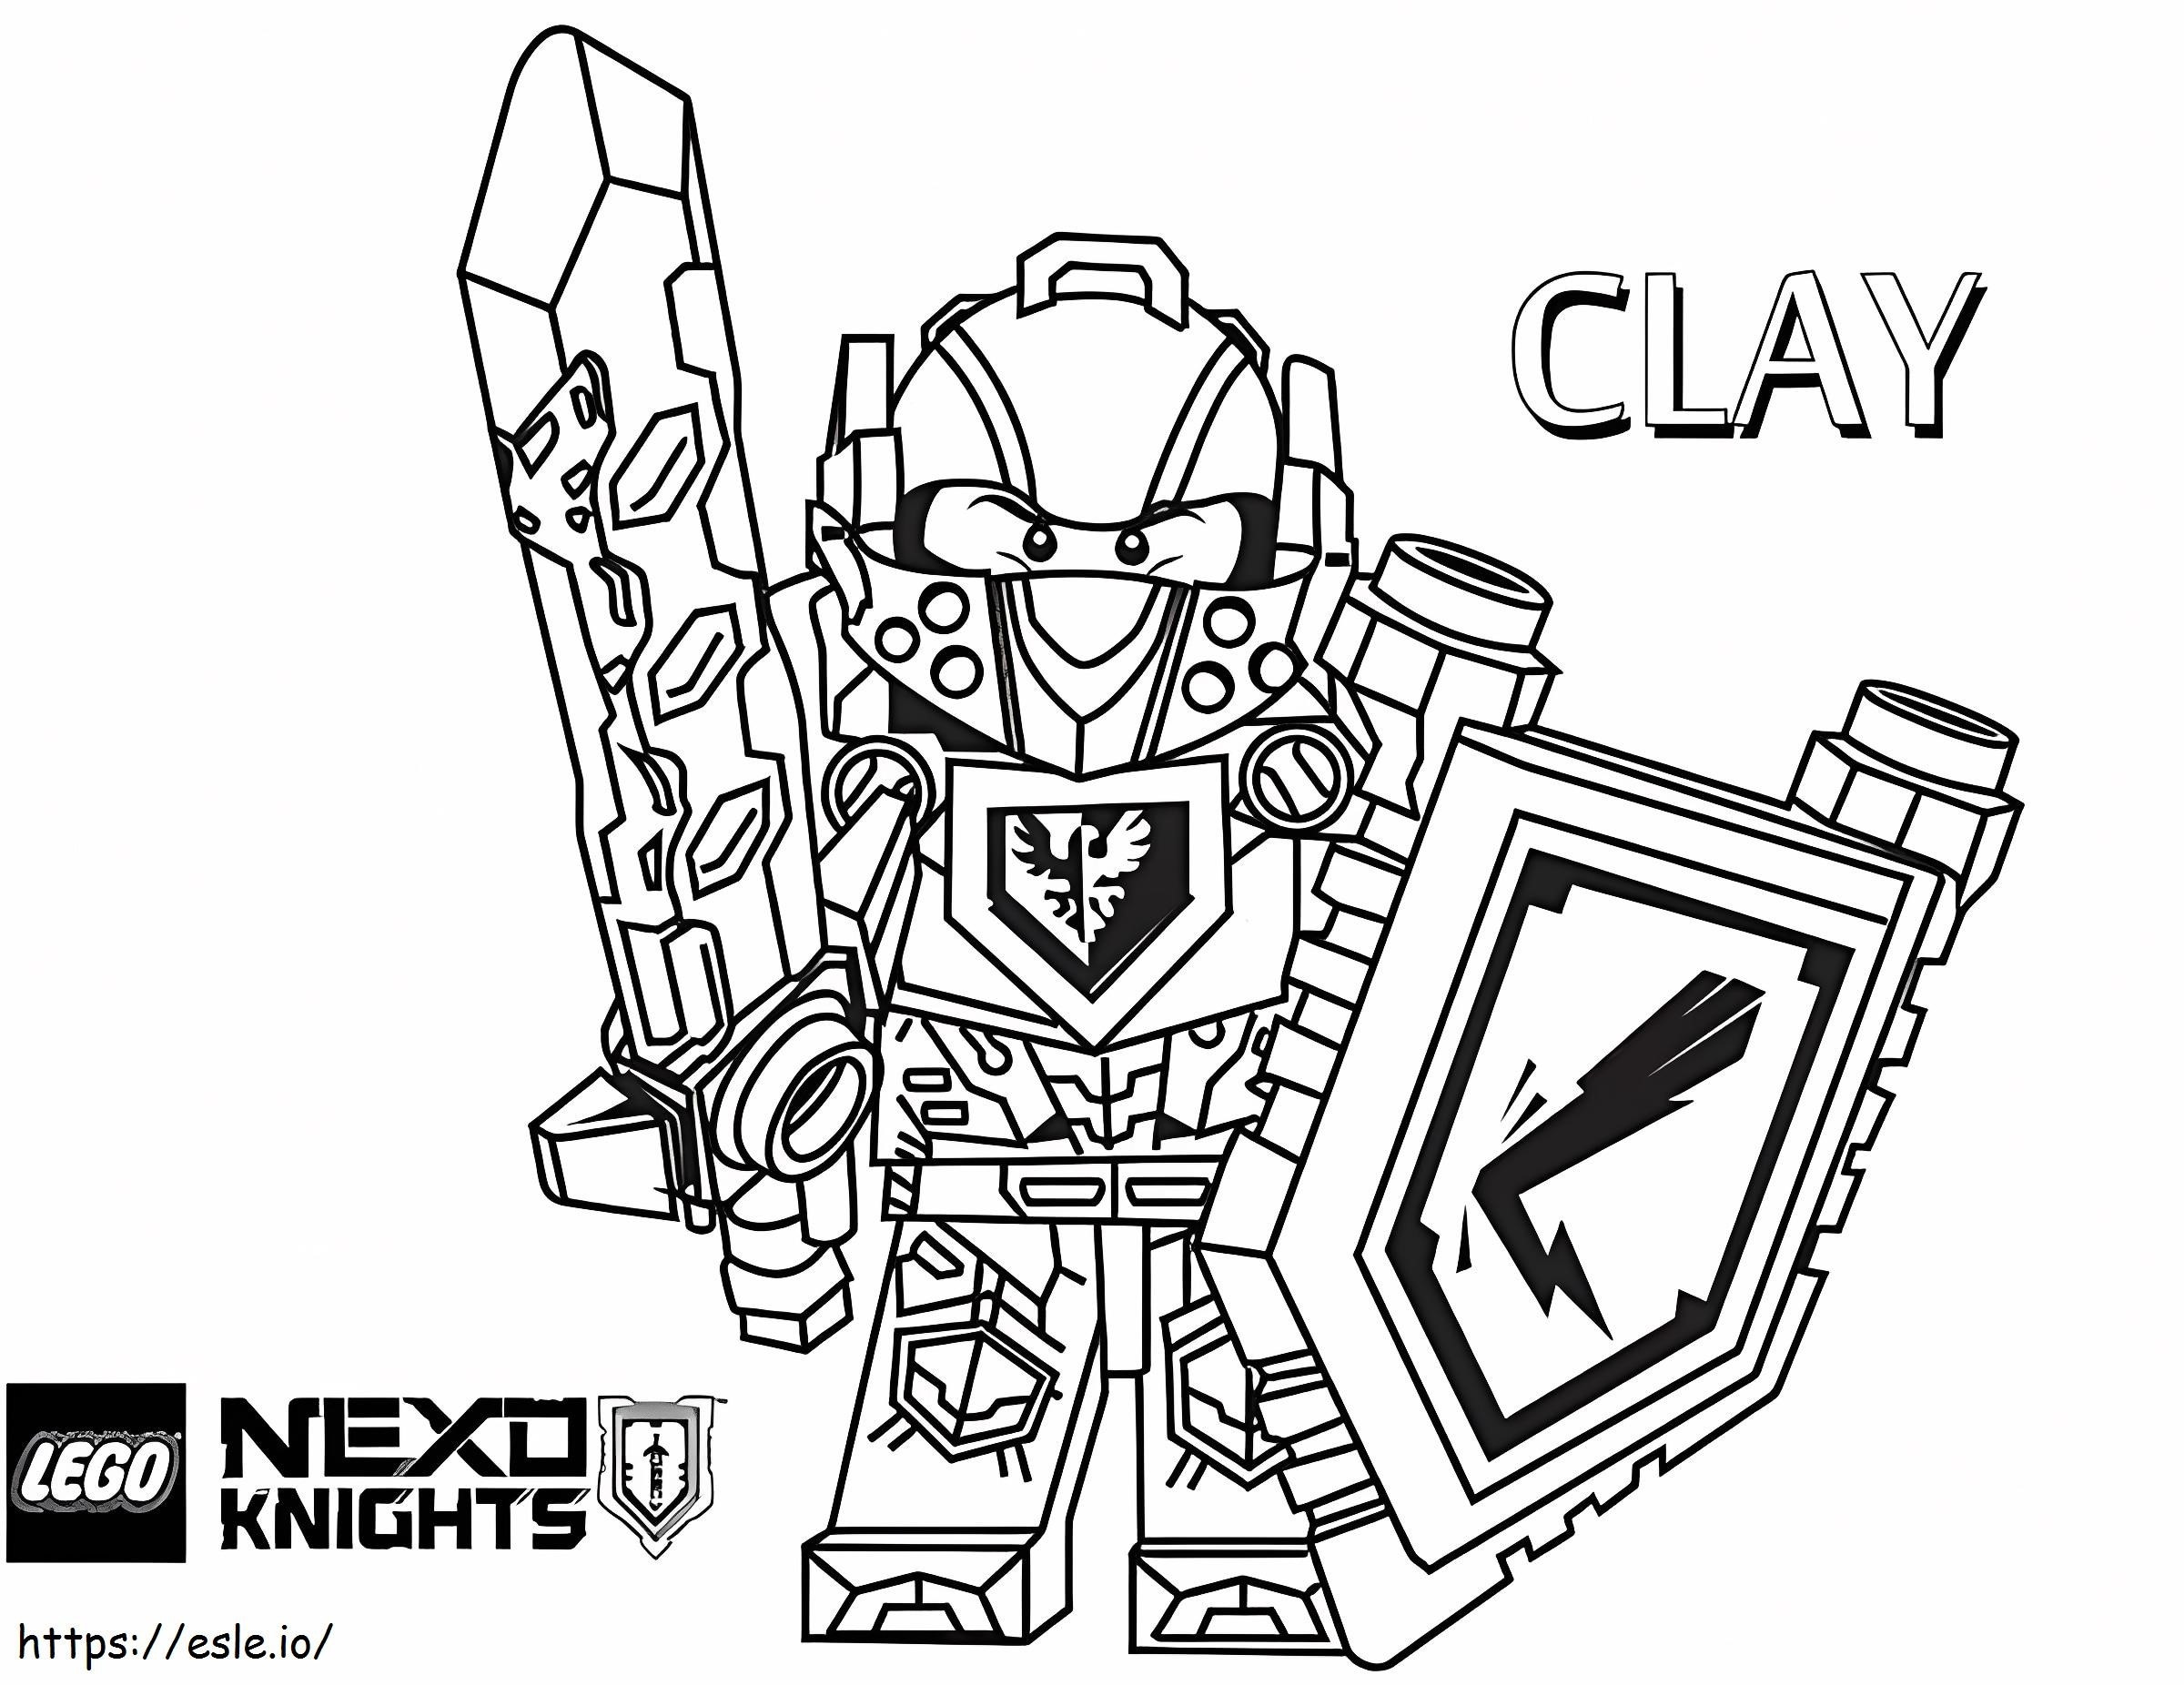 Clay Caballero De Nexus Caballero para colorir